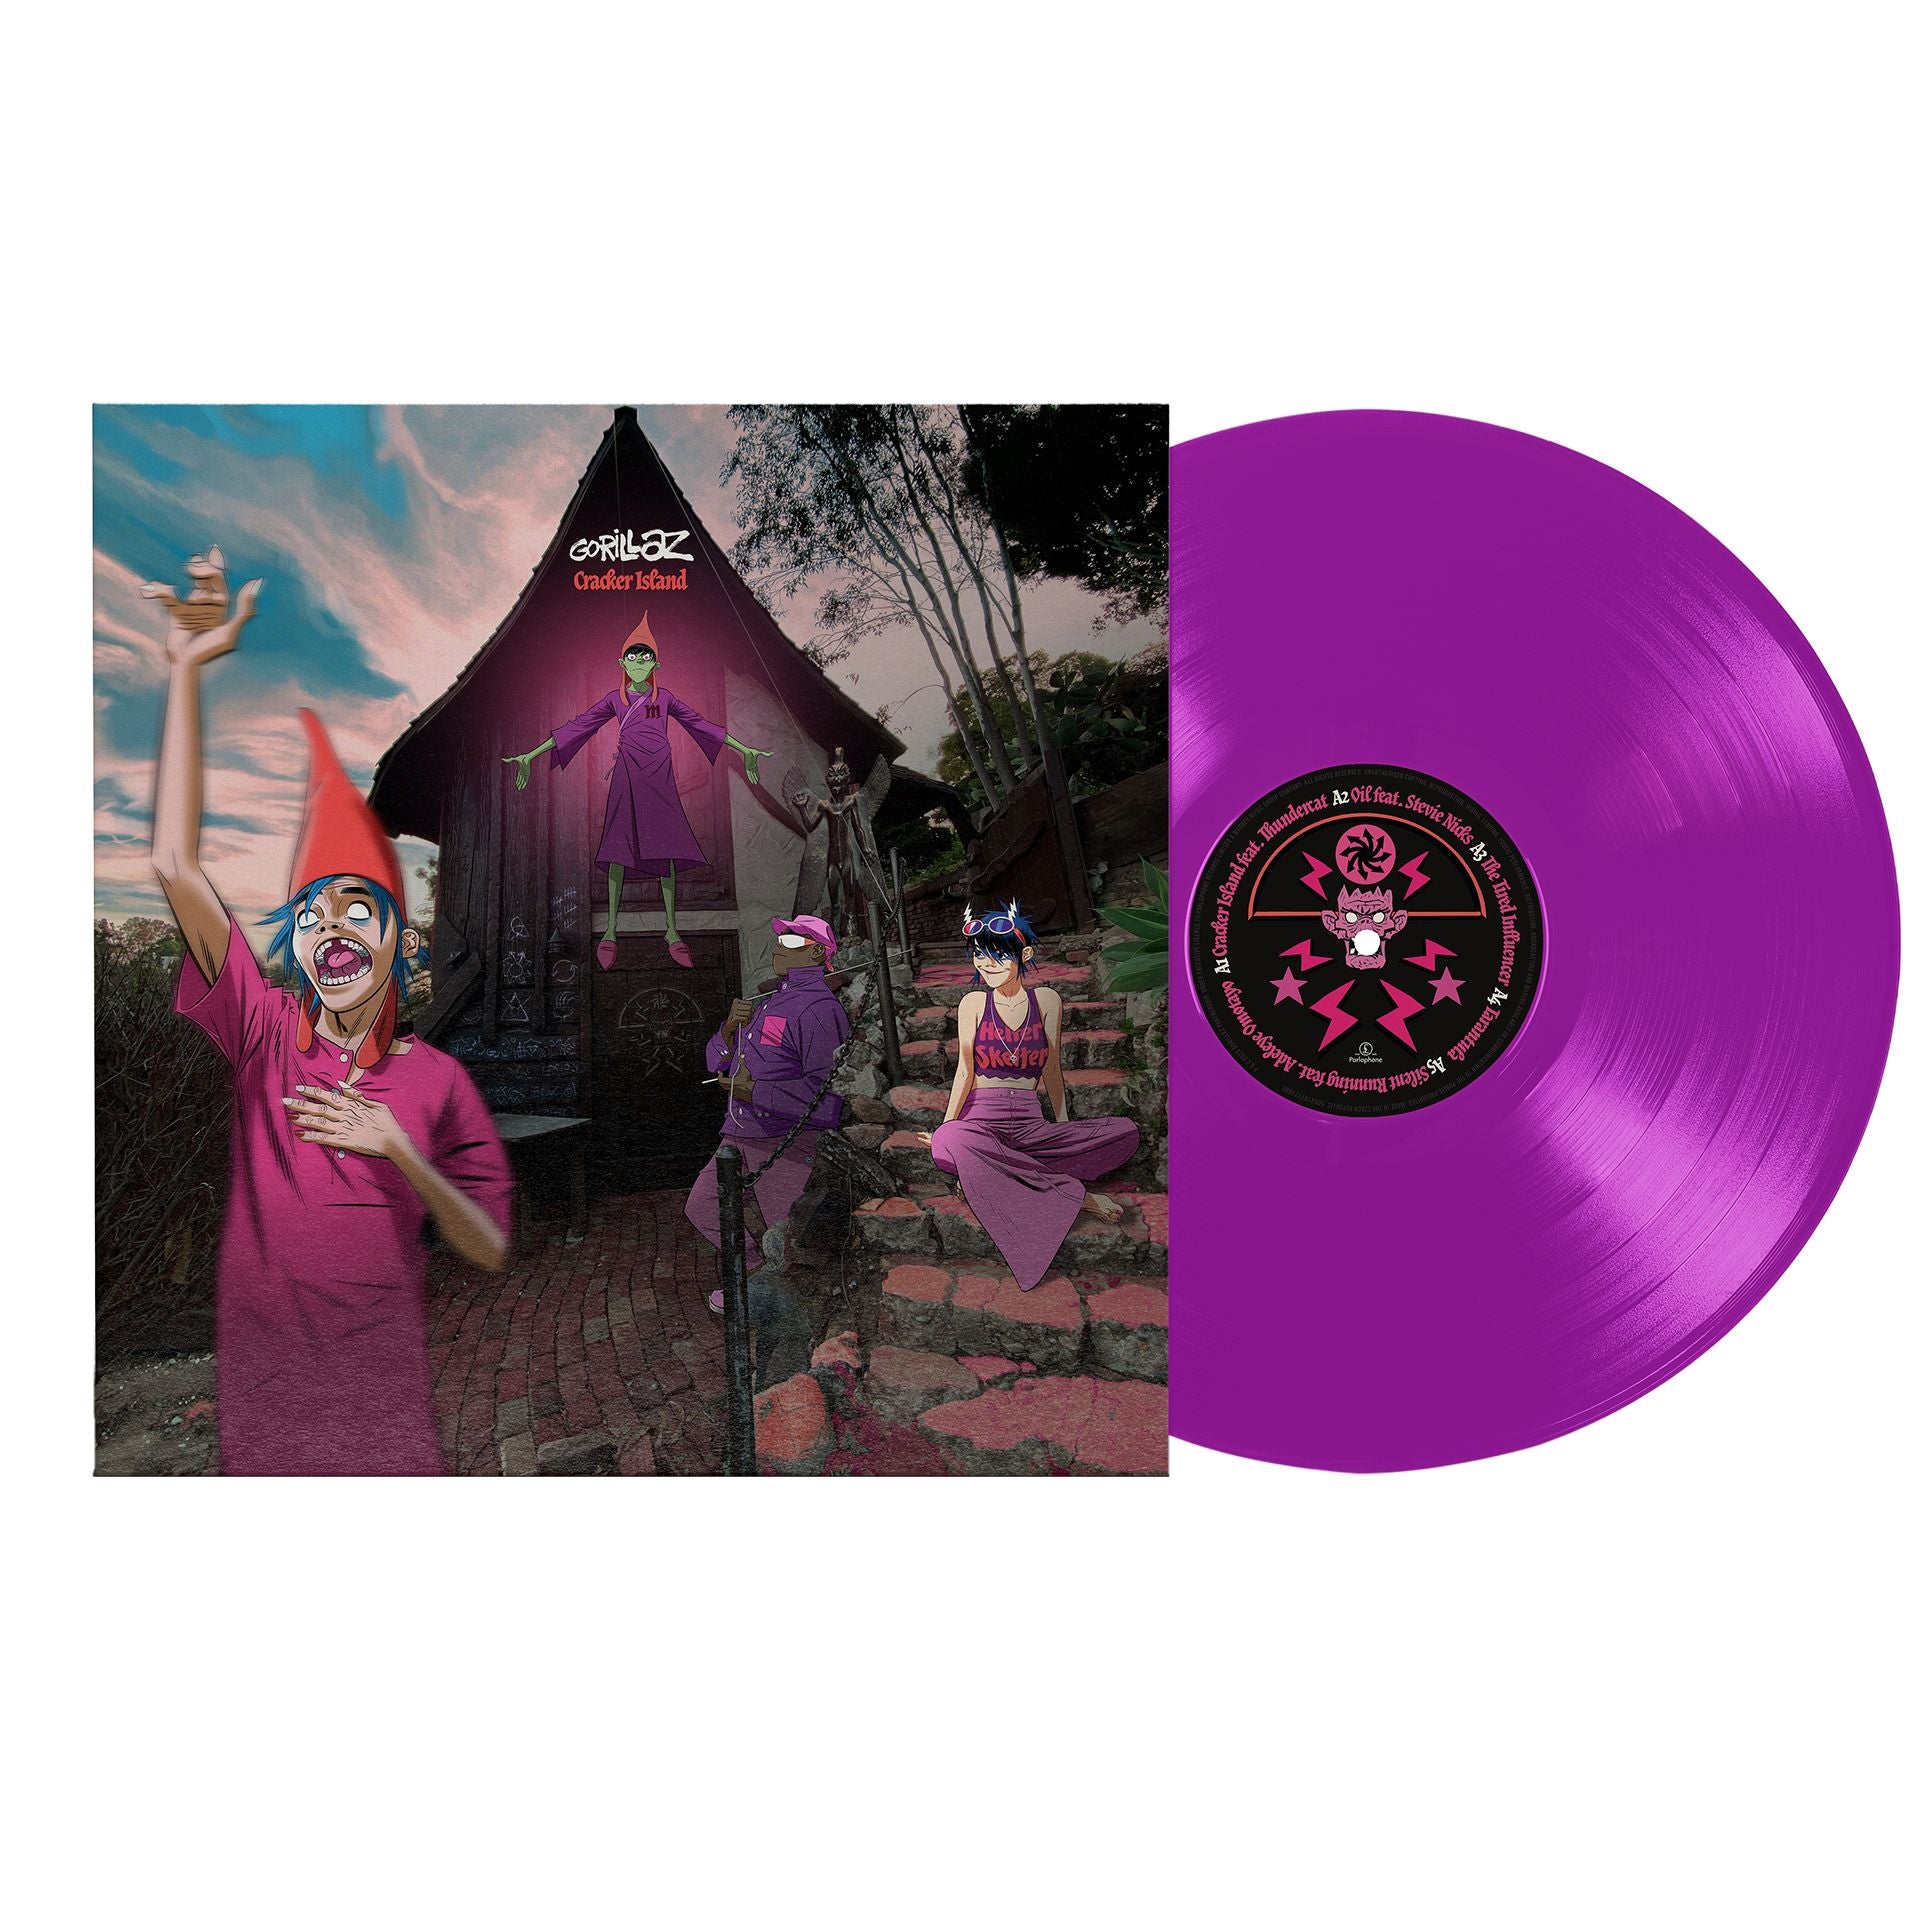 Gorillaz - Cracker Island [Indie Exclusive Limited Edition Neon Purple LP] - Darkside Records